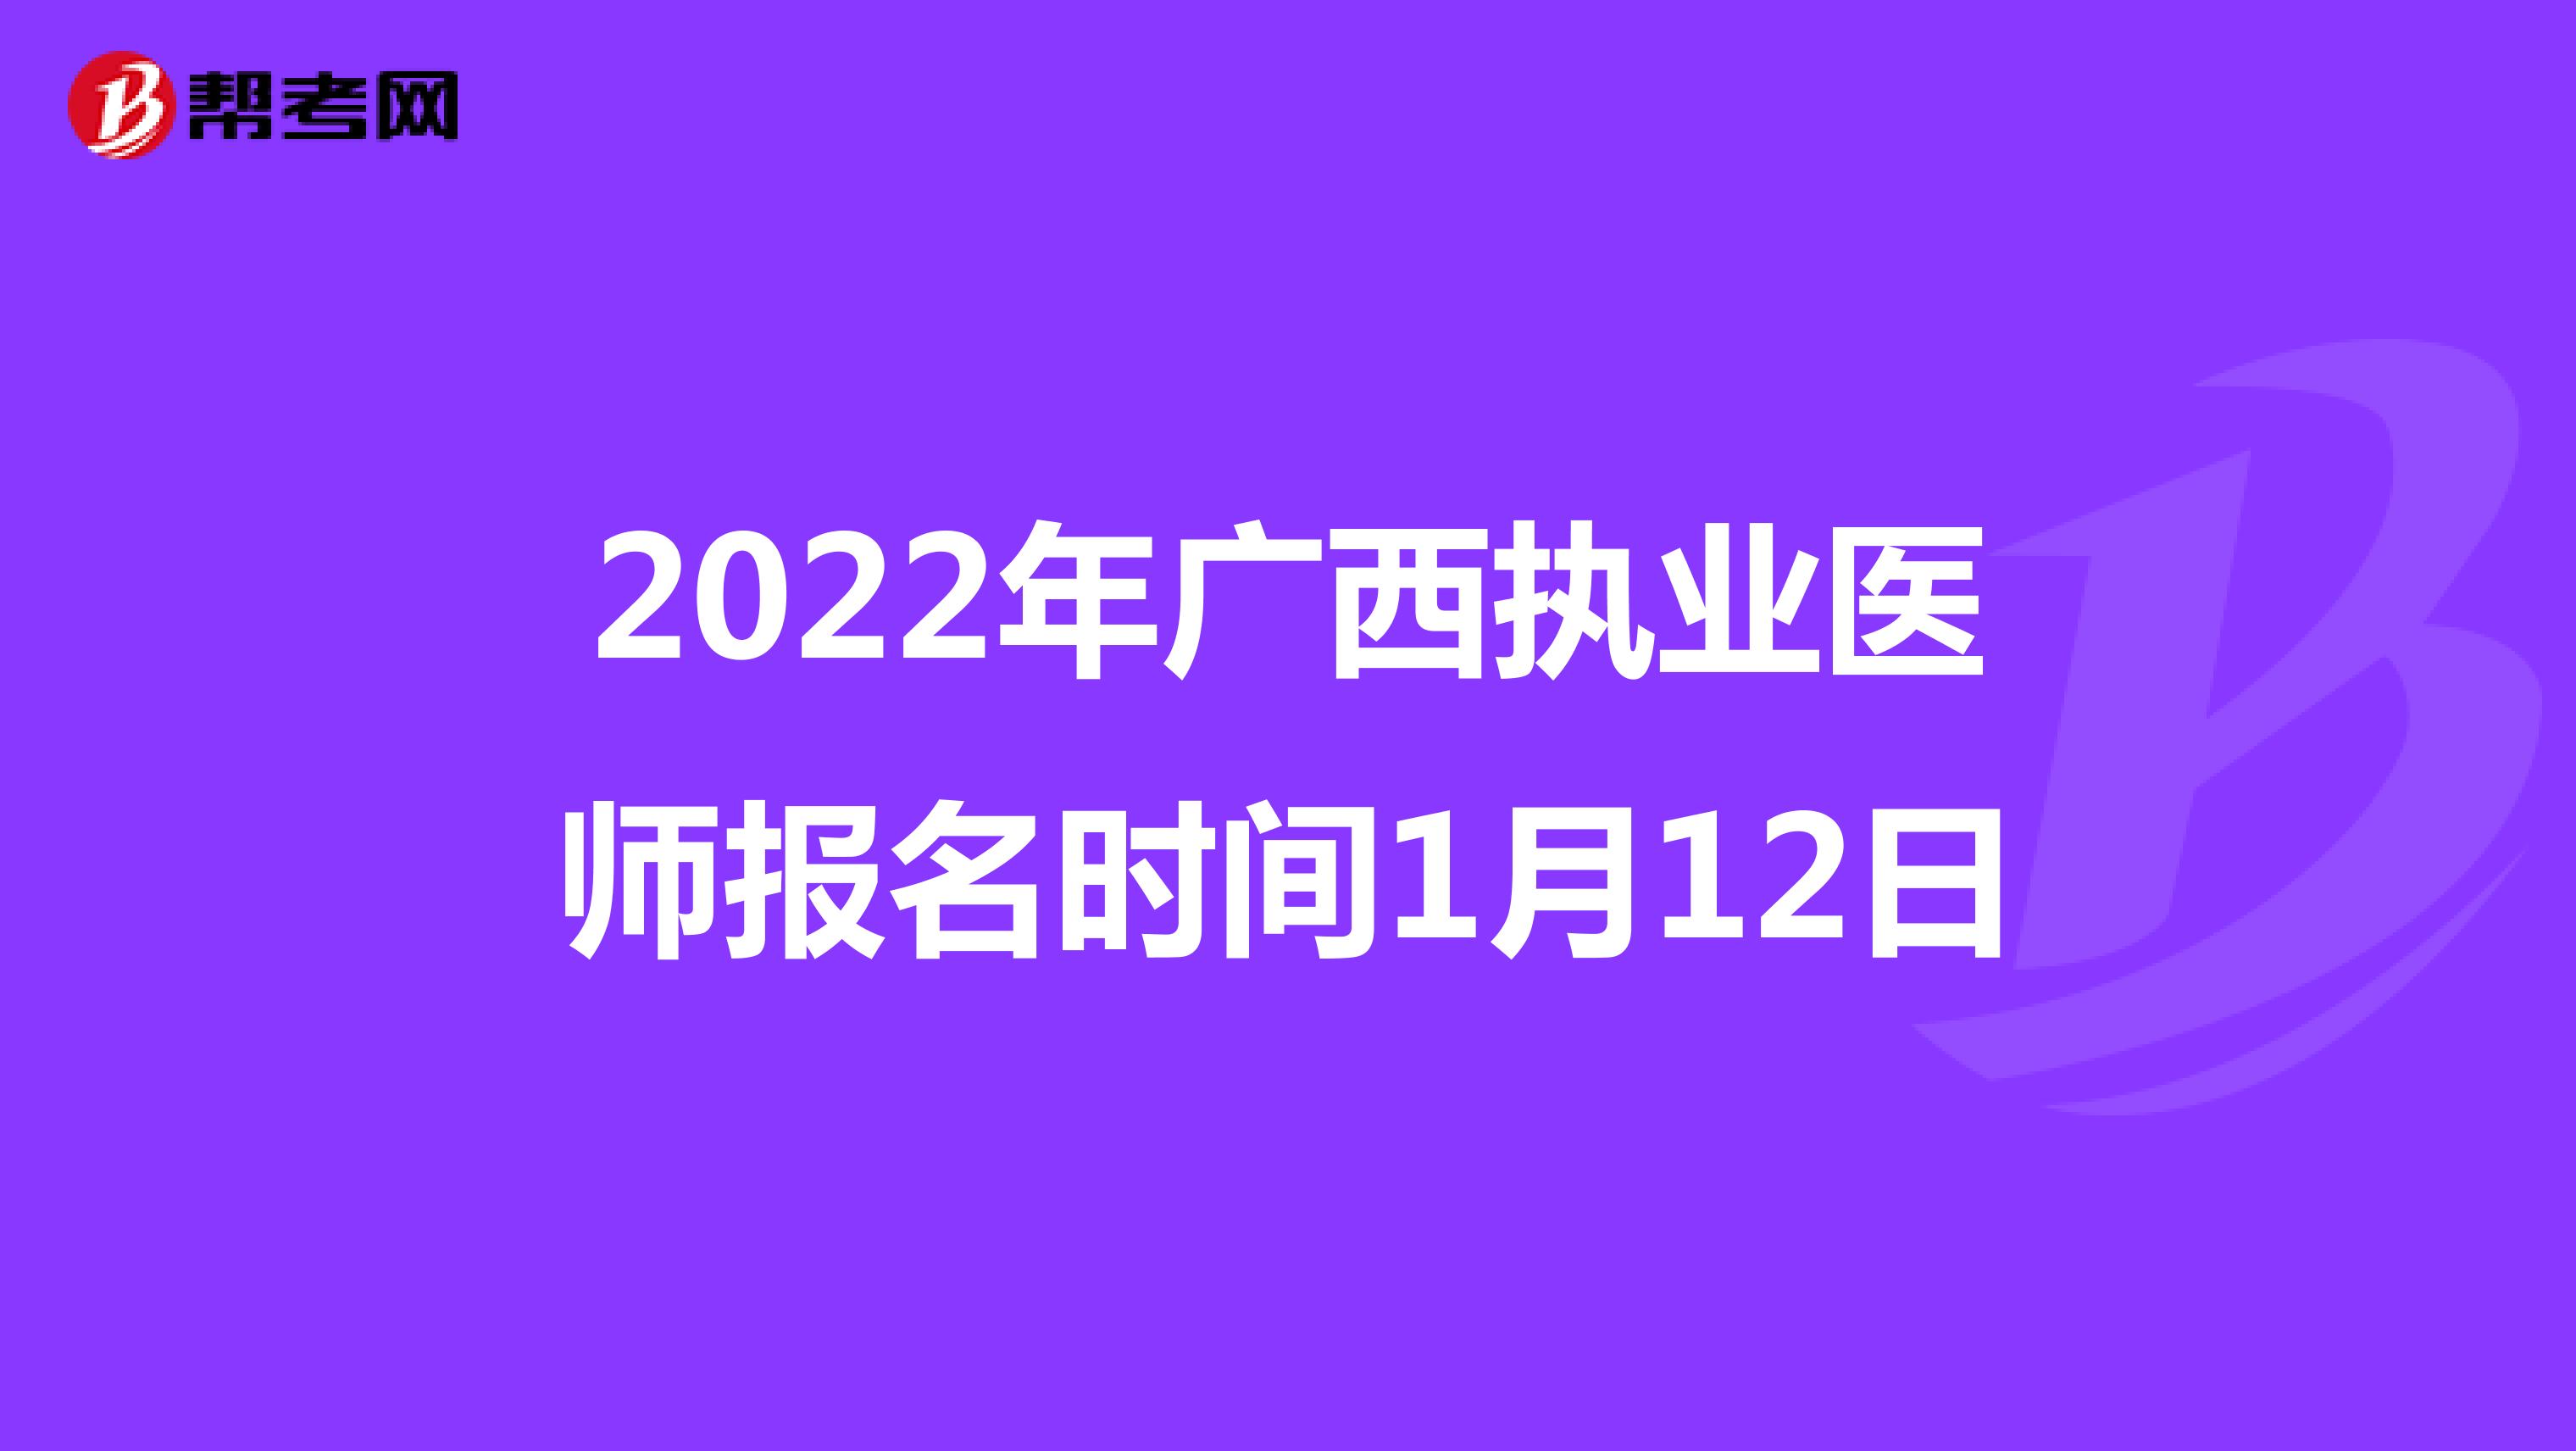 2022年广西执业医师报名时间1月12日